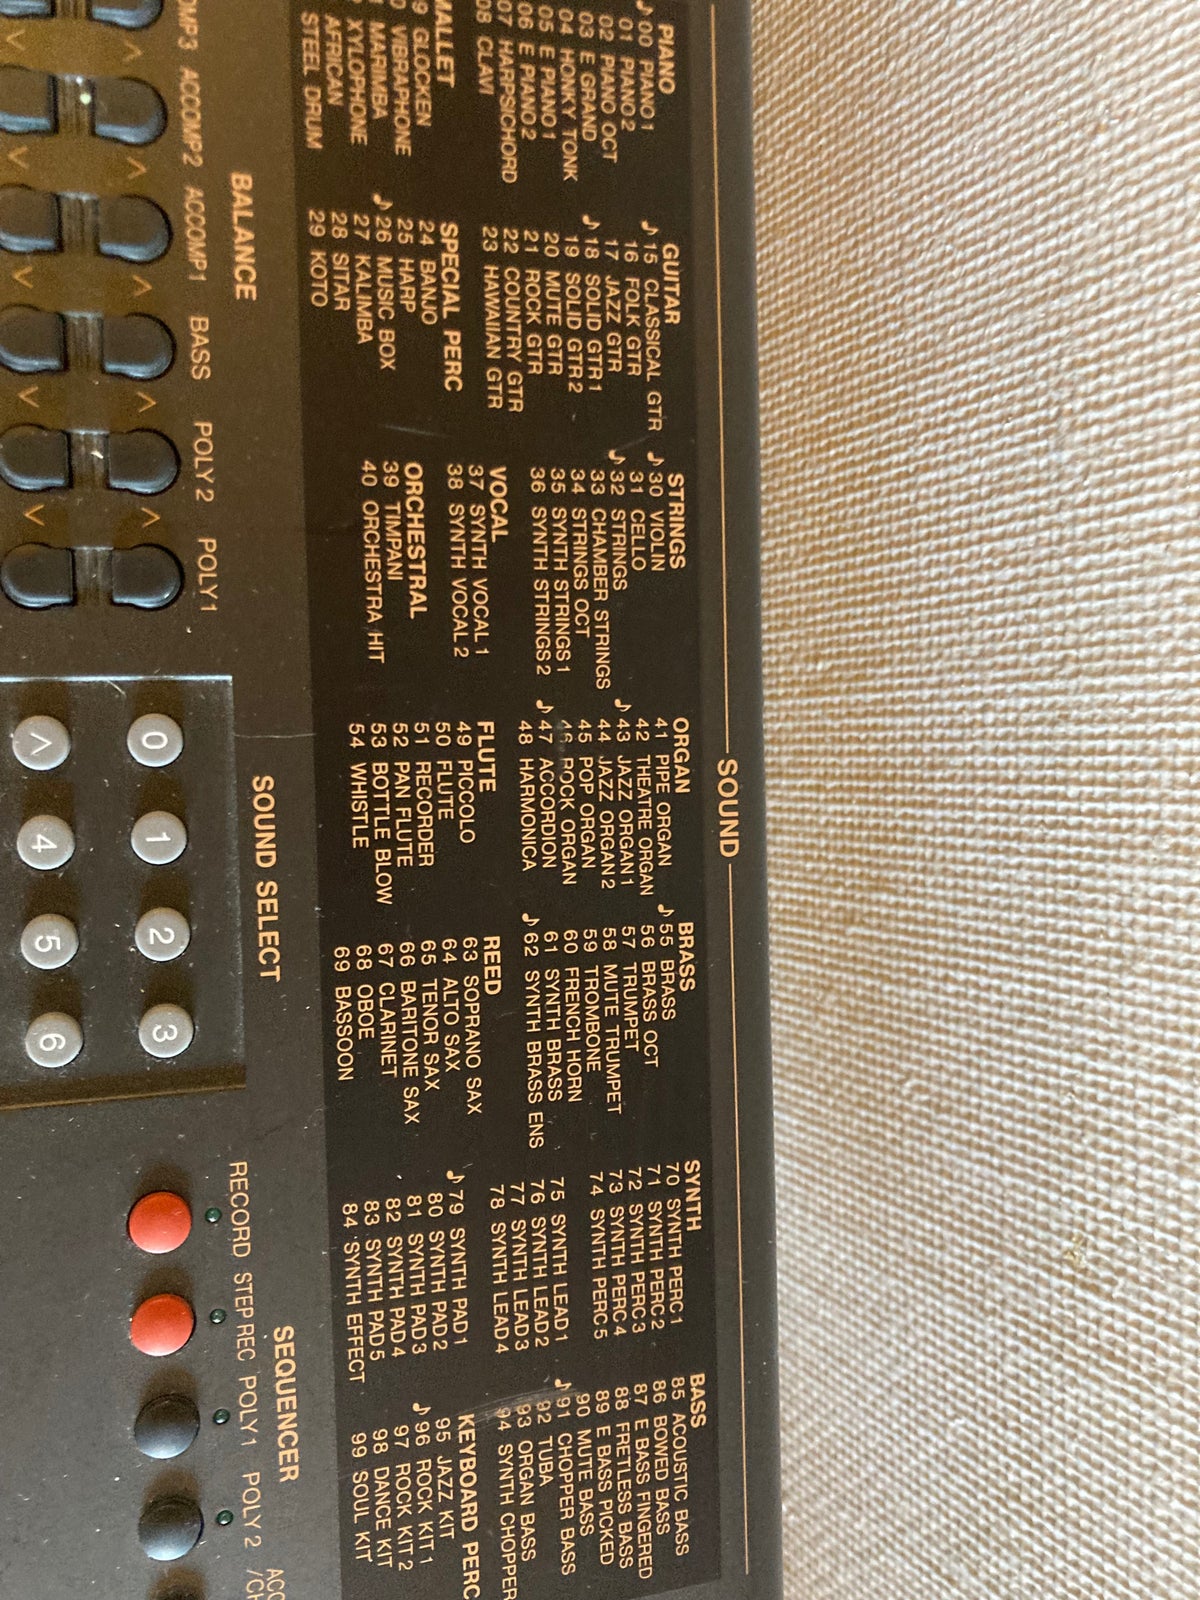 Keyboard, Technics Pcm keyboard KN550